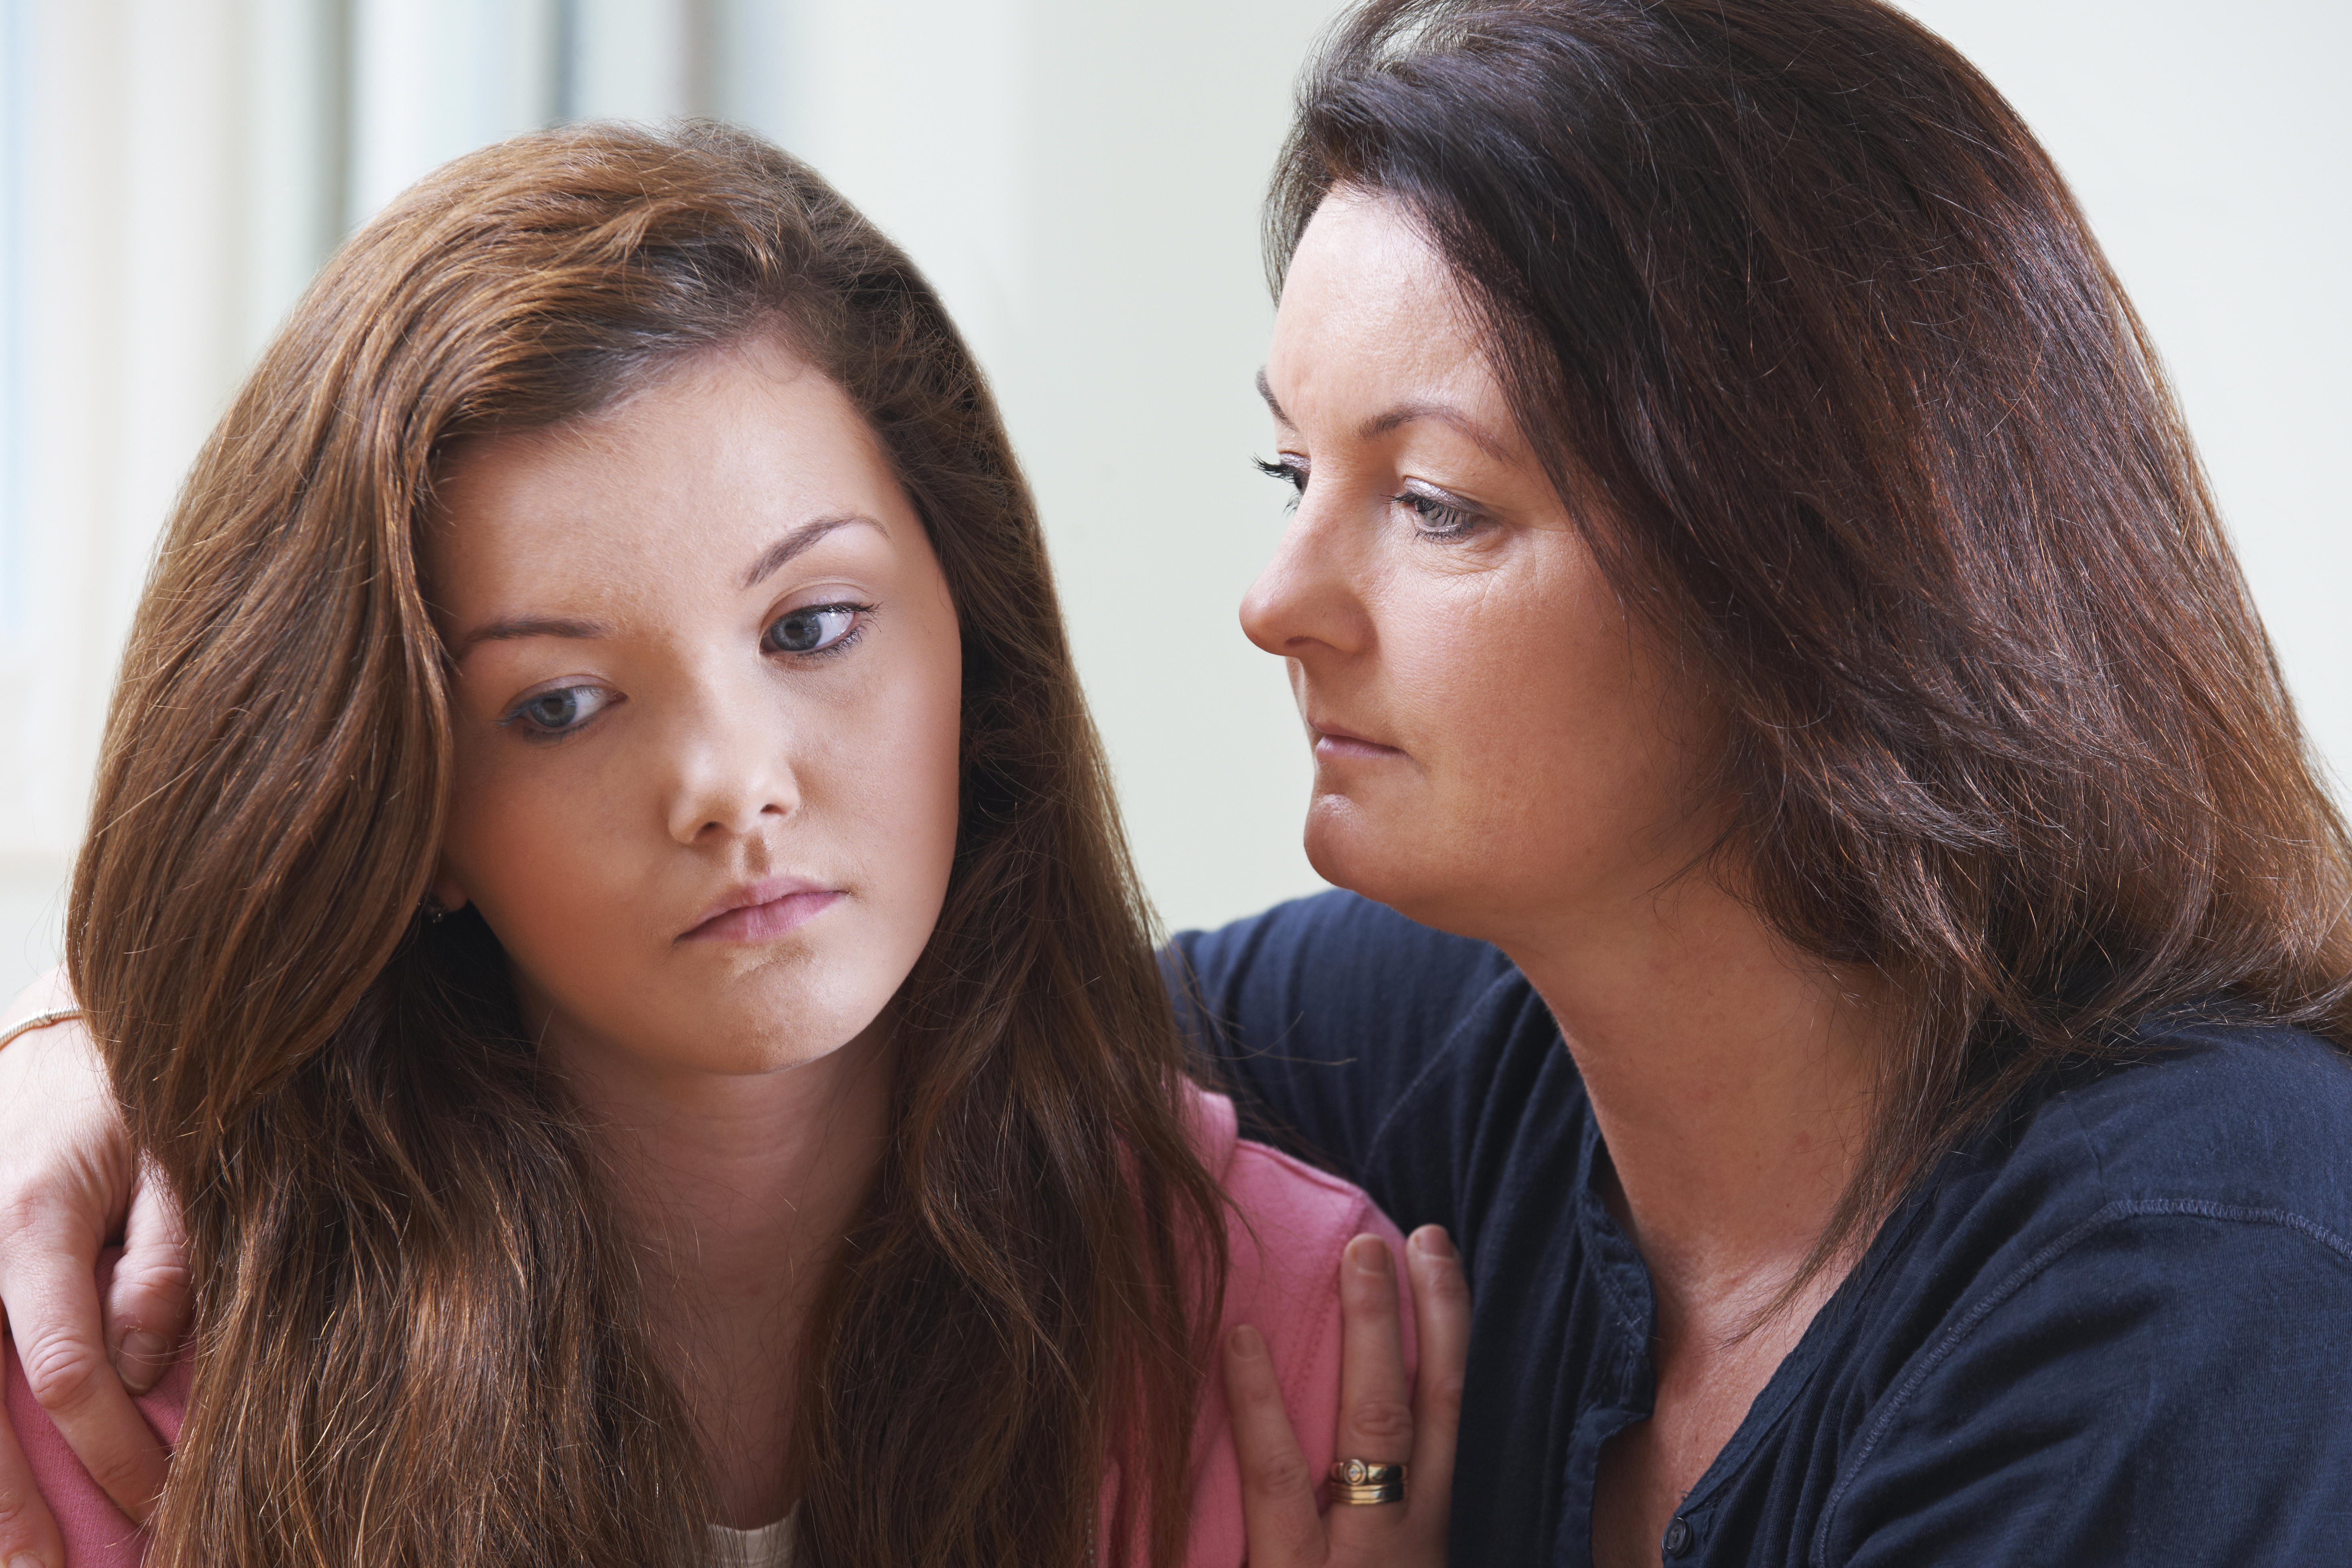 Mother comforting teenage daughter | Source: Shutterstock